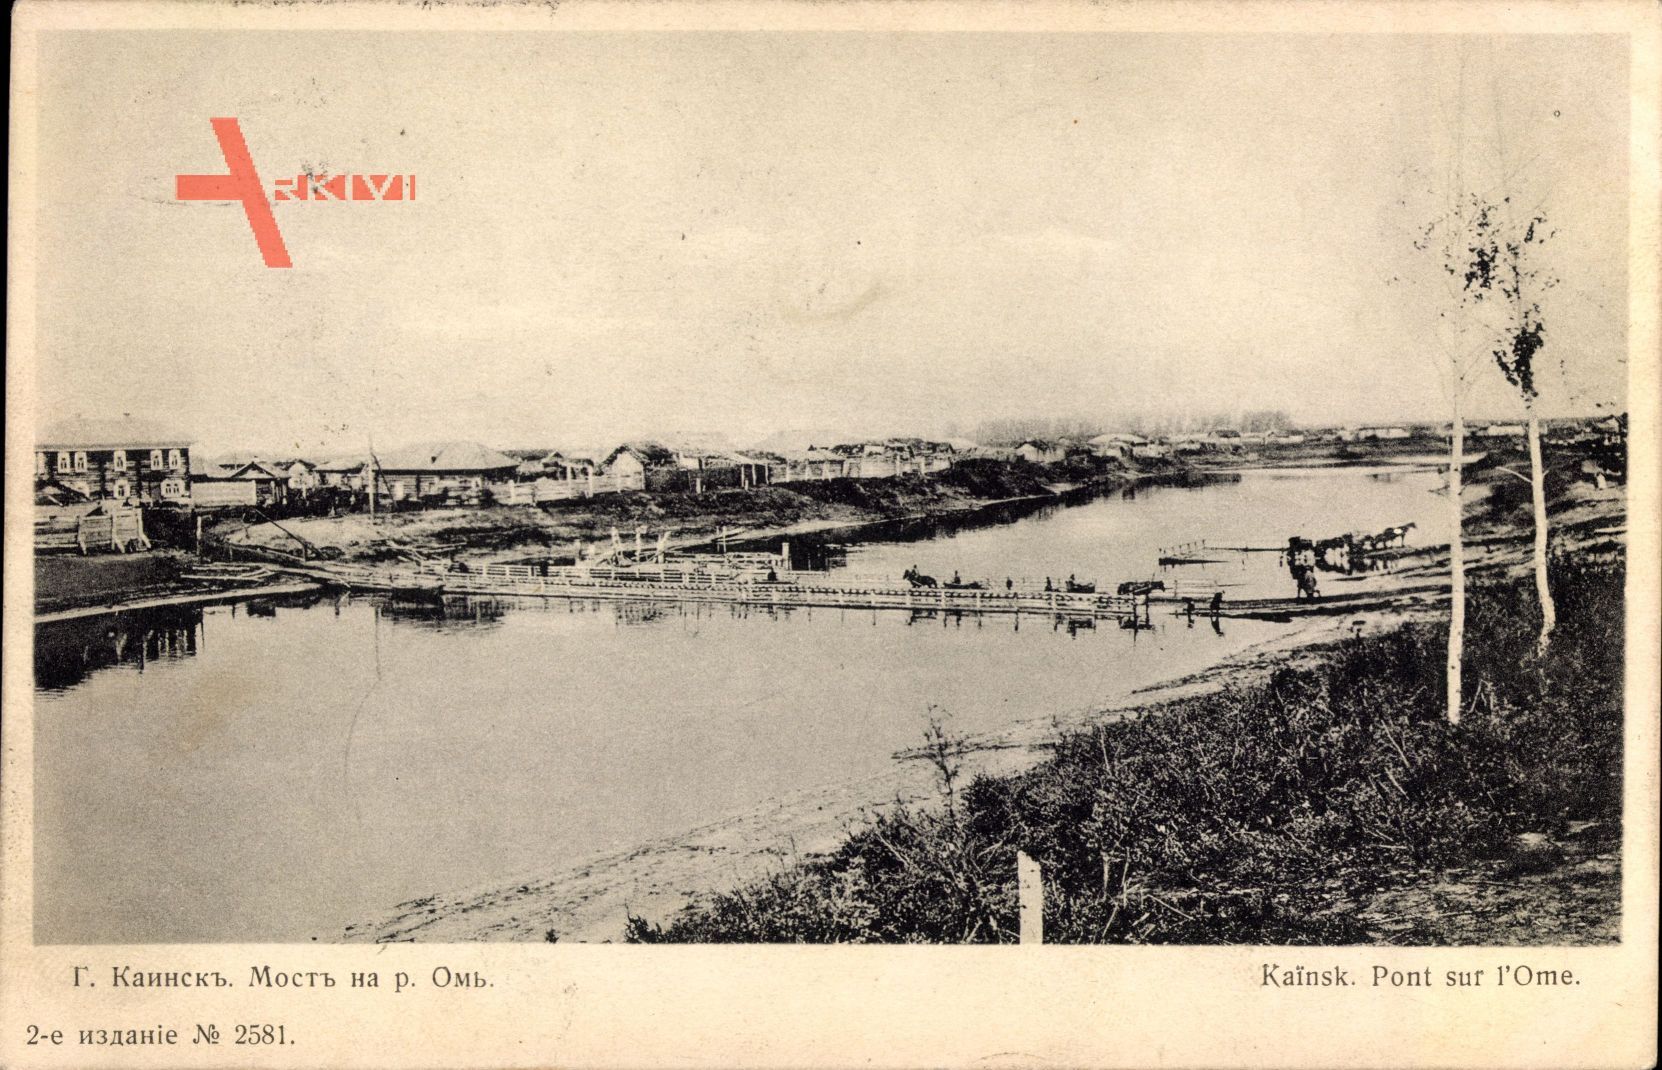 Kainsk Russland, Pont sur l'Ome, Holzbrücke, Ort am Fluss